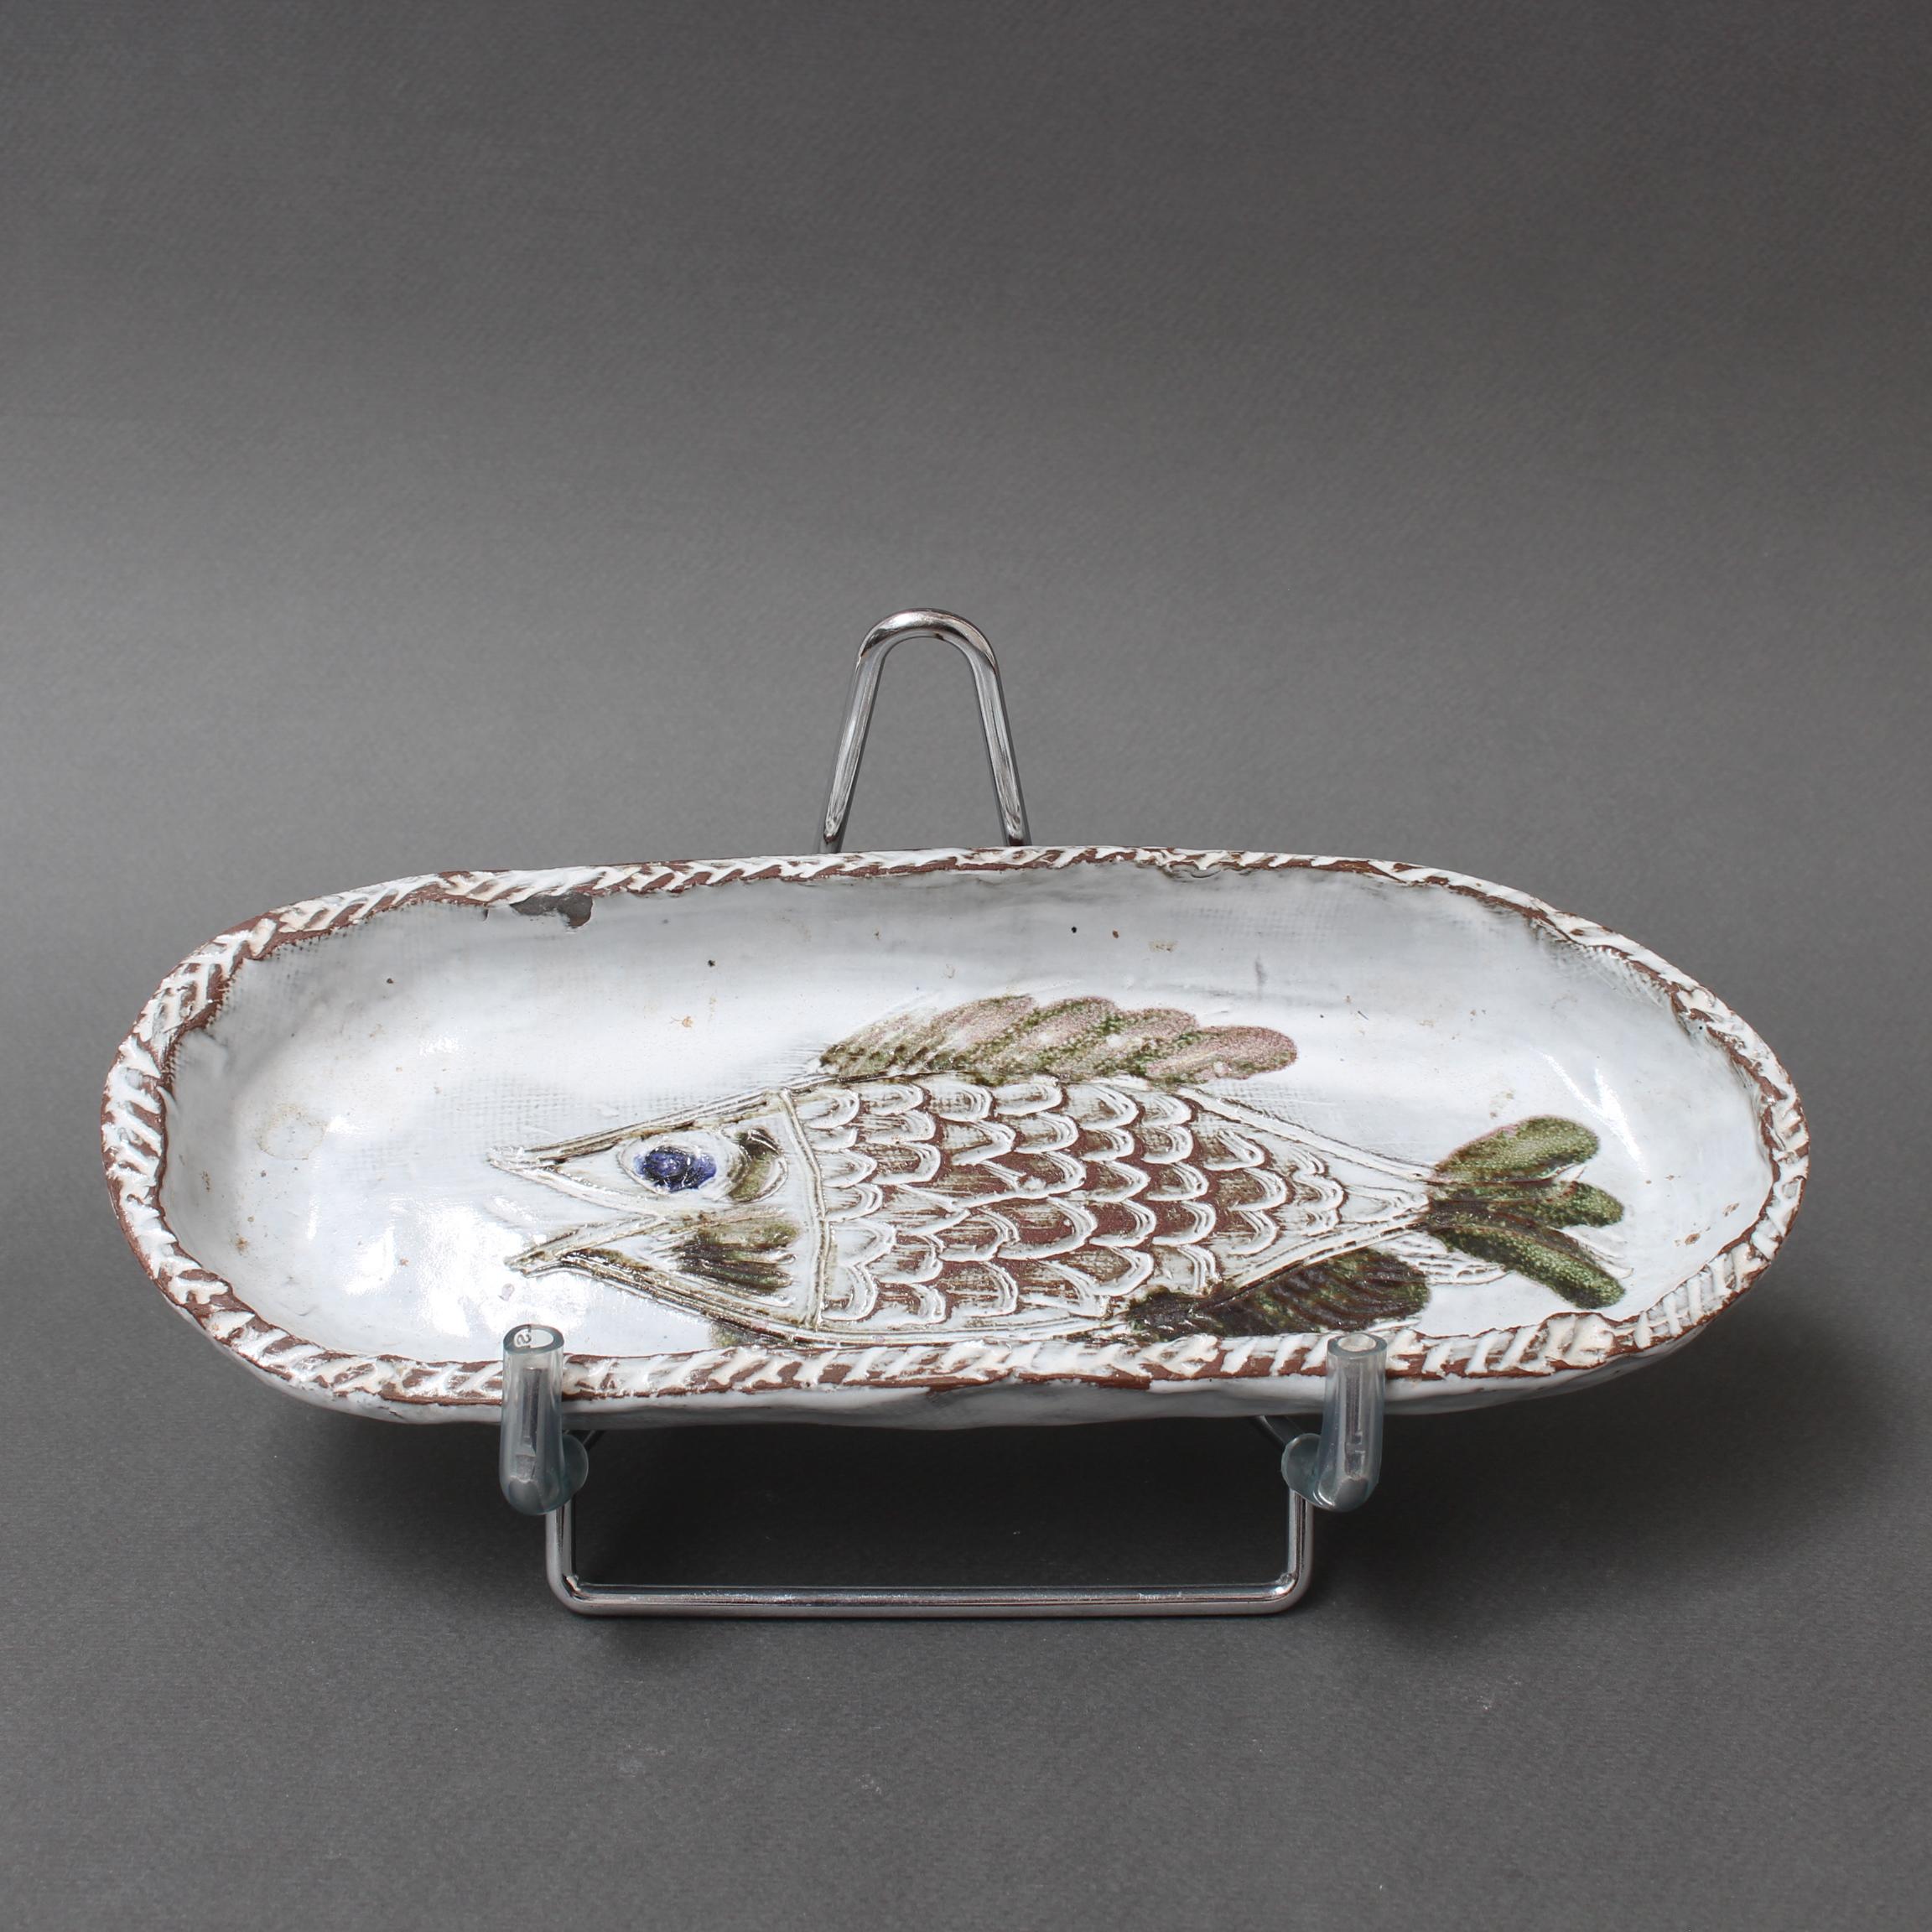 Dekorative französische Keramikschale mit Fischmotiv (ca. 1970er Jahre) von Albert Thiry. Eine ovale Keramikschale hat eine kreideweiße Glasur. In der Vertiefung der Schale ist ein Fisch in die Glasur geritzt und mit den für Thiry typischen braunen,